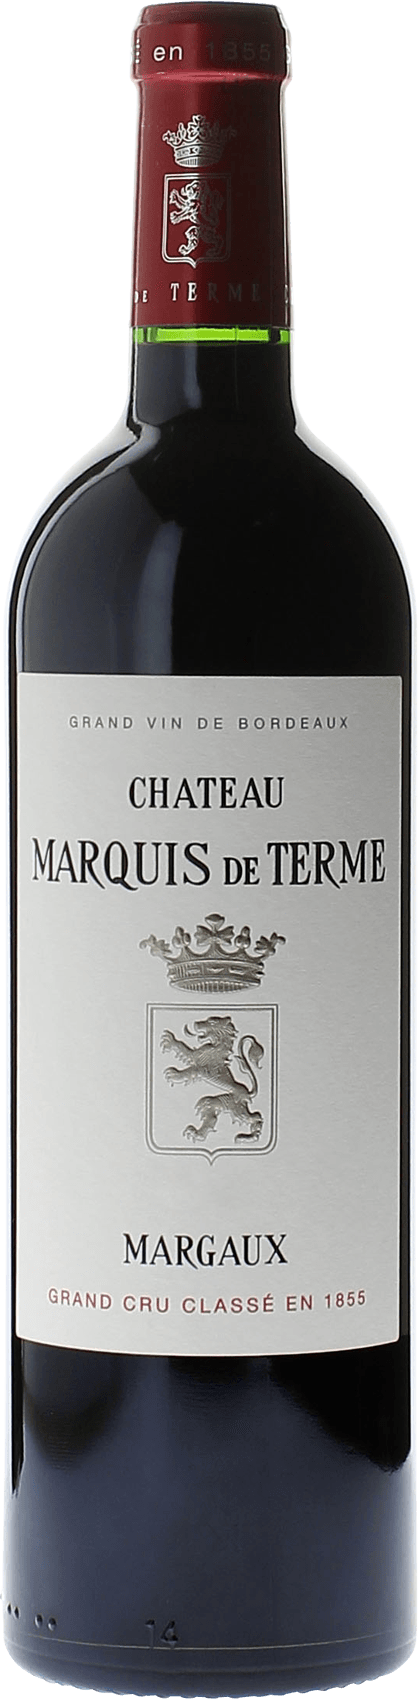 Marquis de terme 2010 4me Grand cru class Margaux, Bordeaux rouge